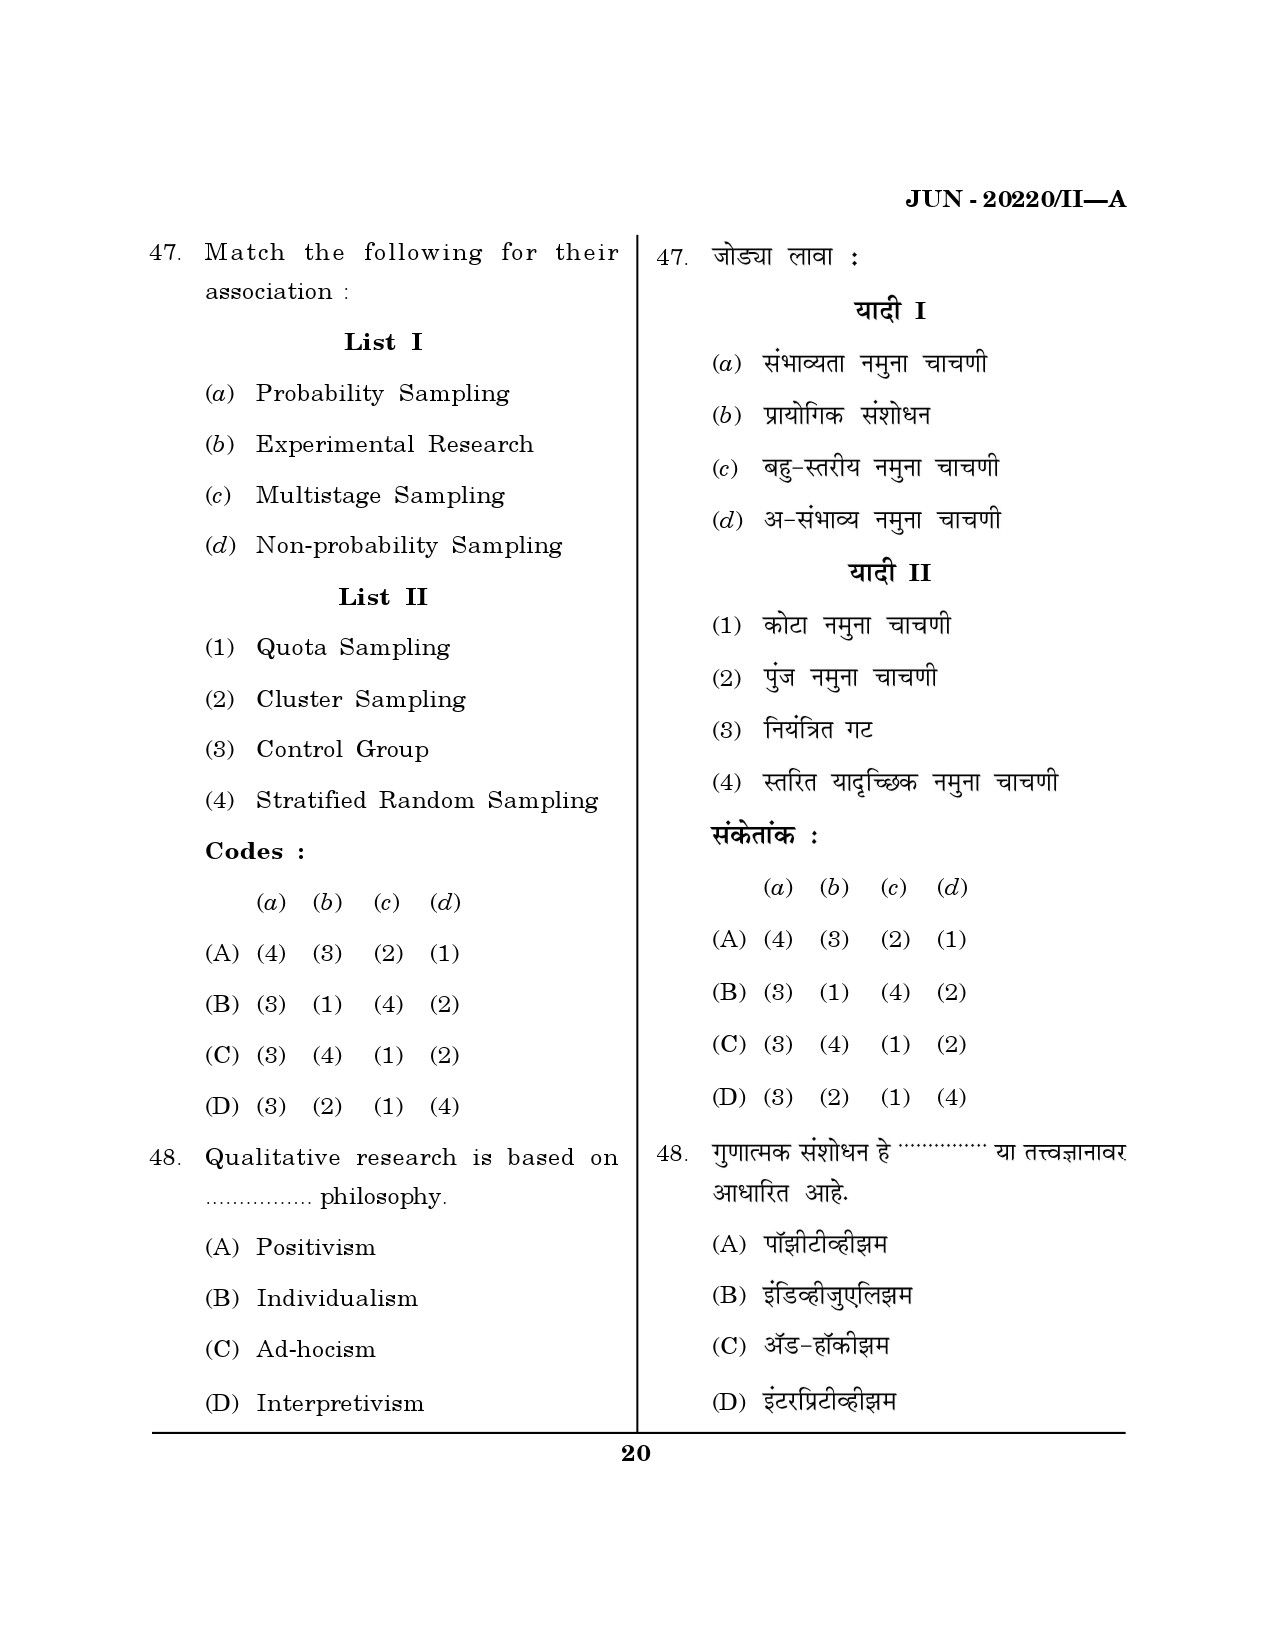 Maharashtra SET Social Work Question Paper II June 2020 19